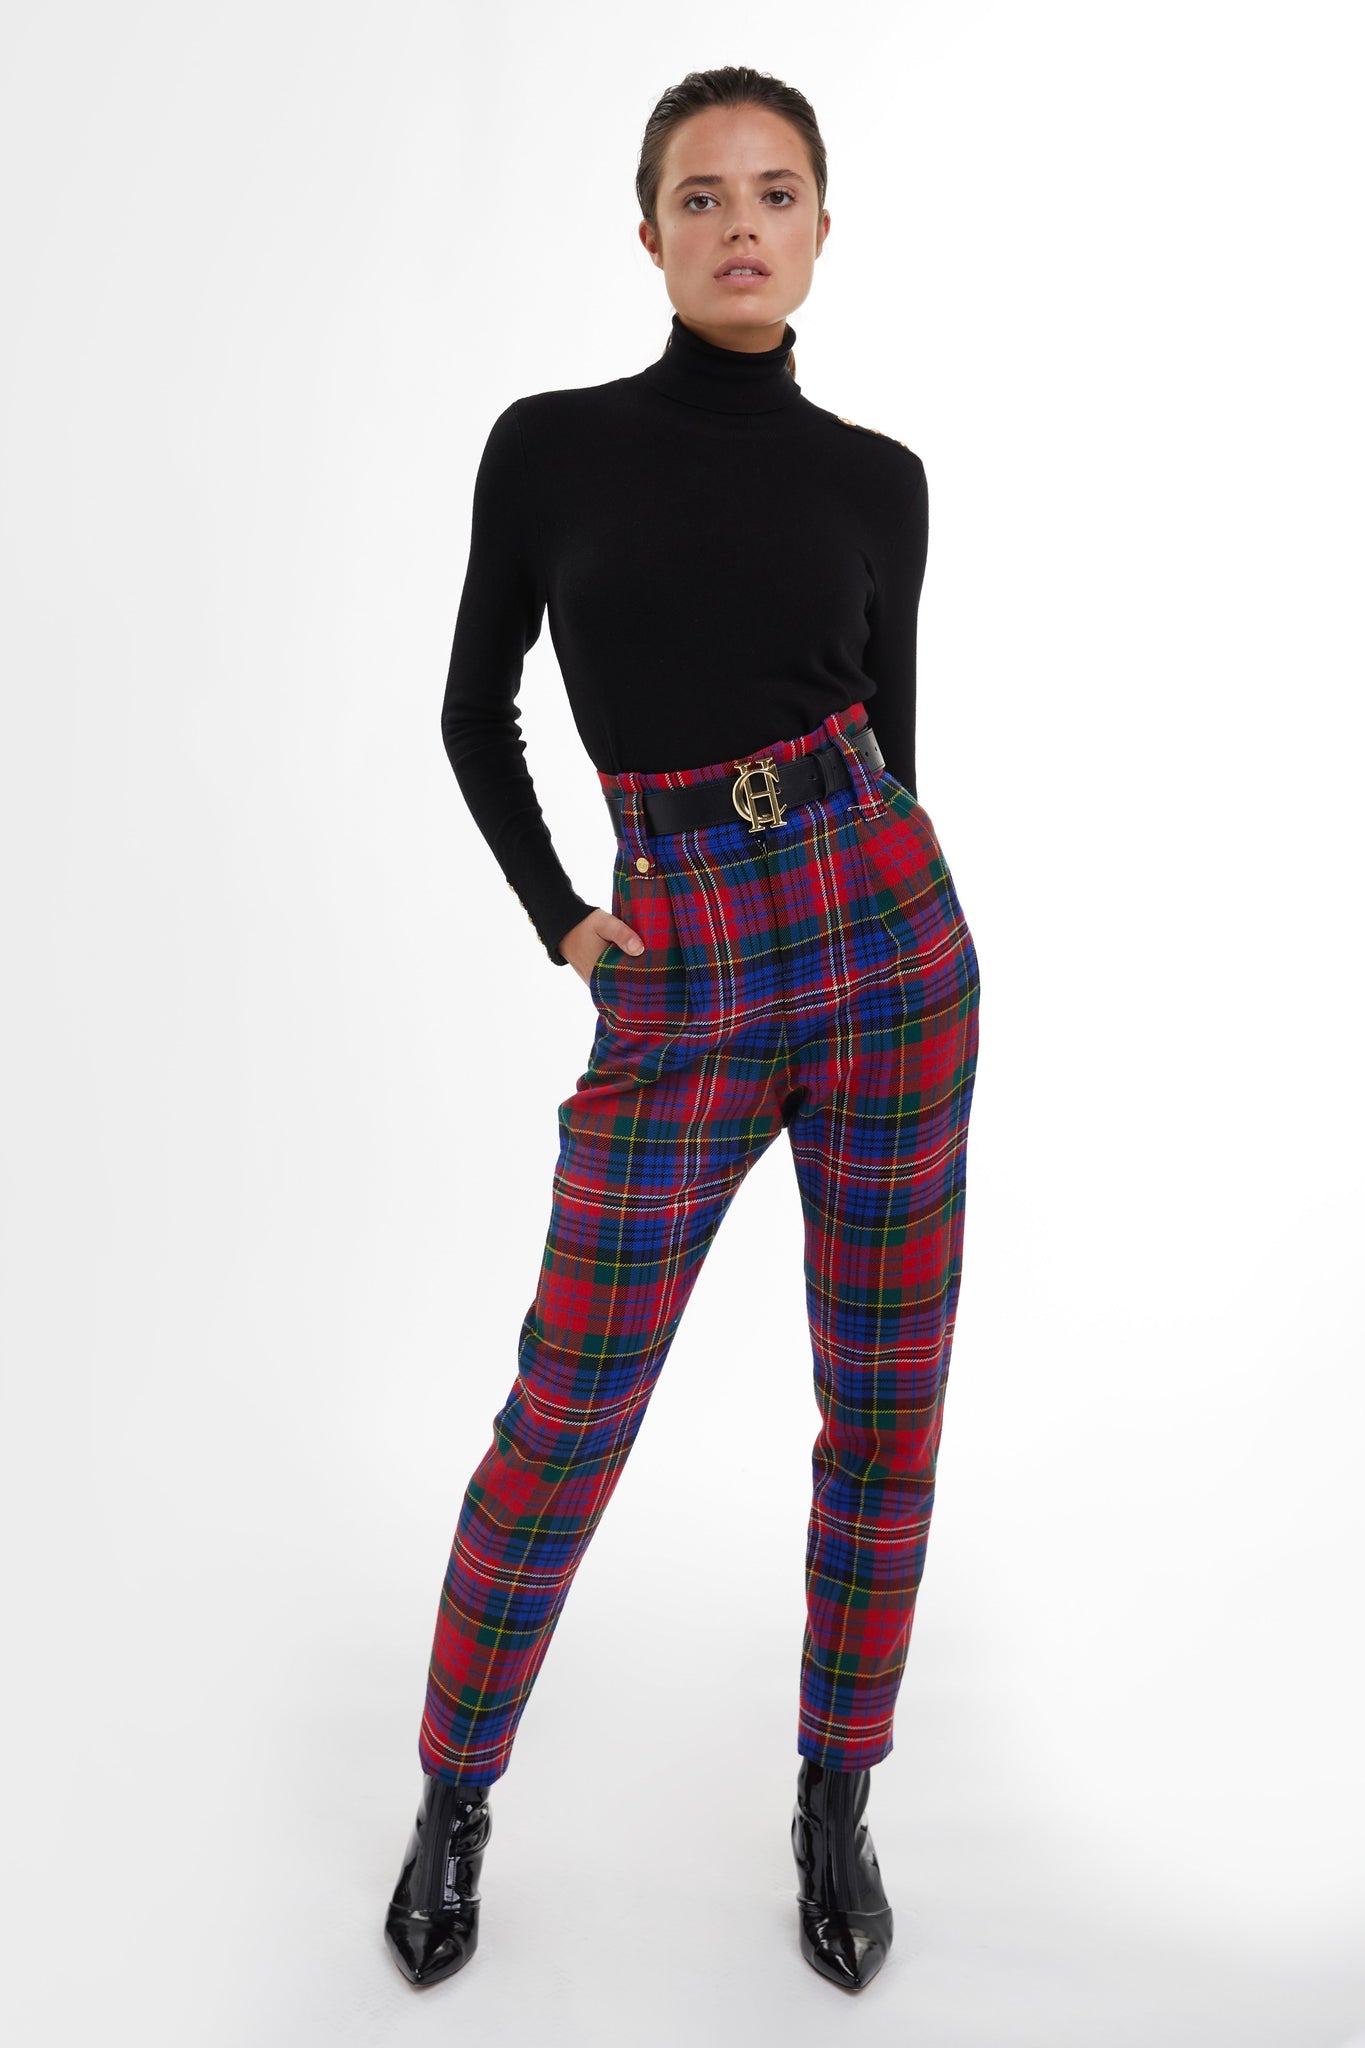 Silk Peg Leg Trousers Grass Fields Women's Size 14 Made In Nigeria | eBay